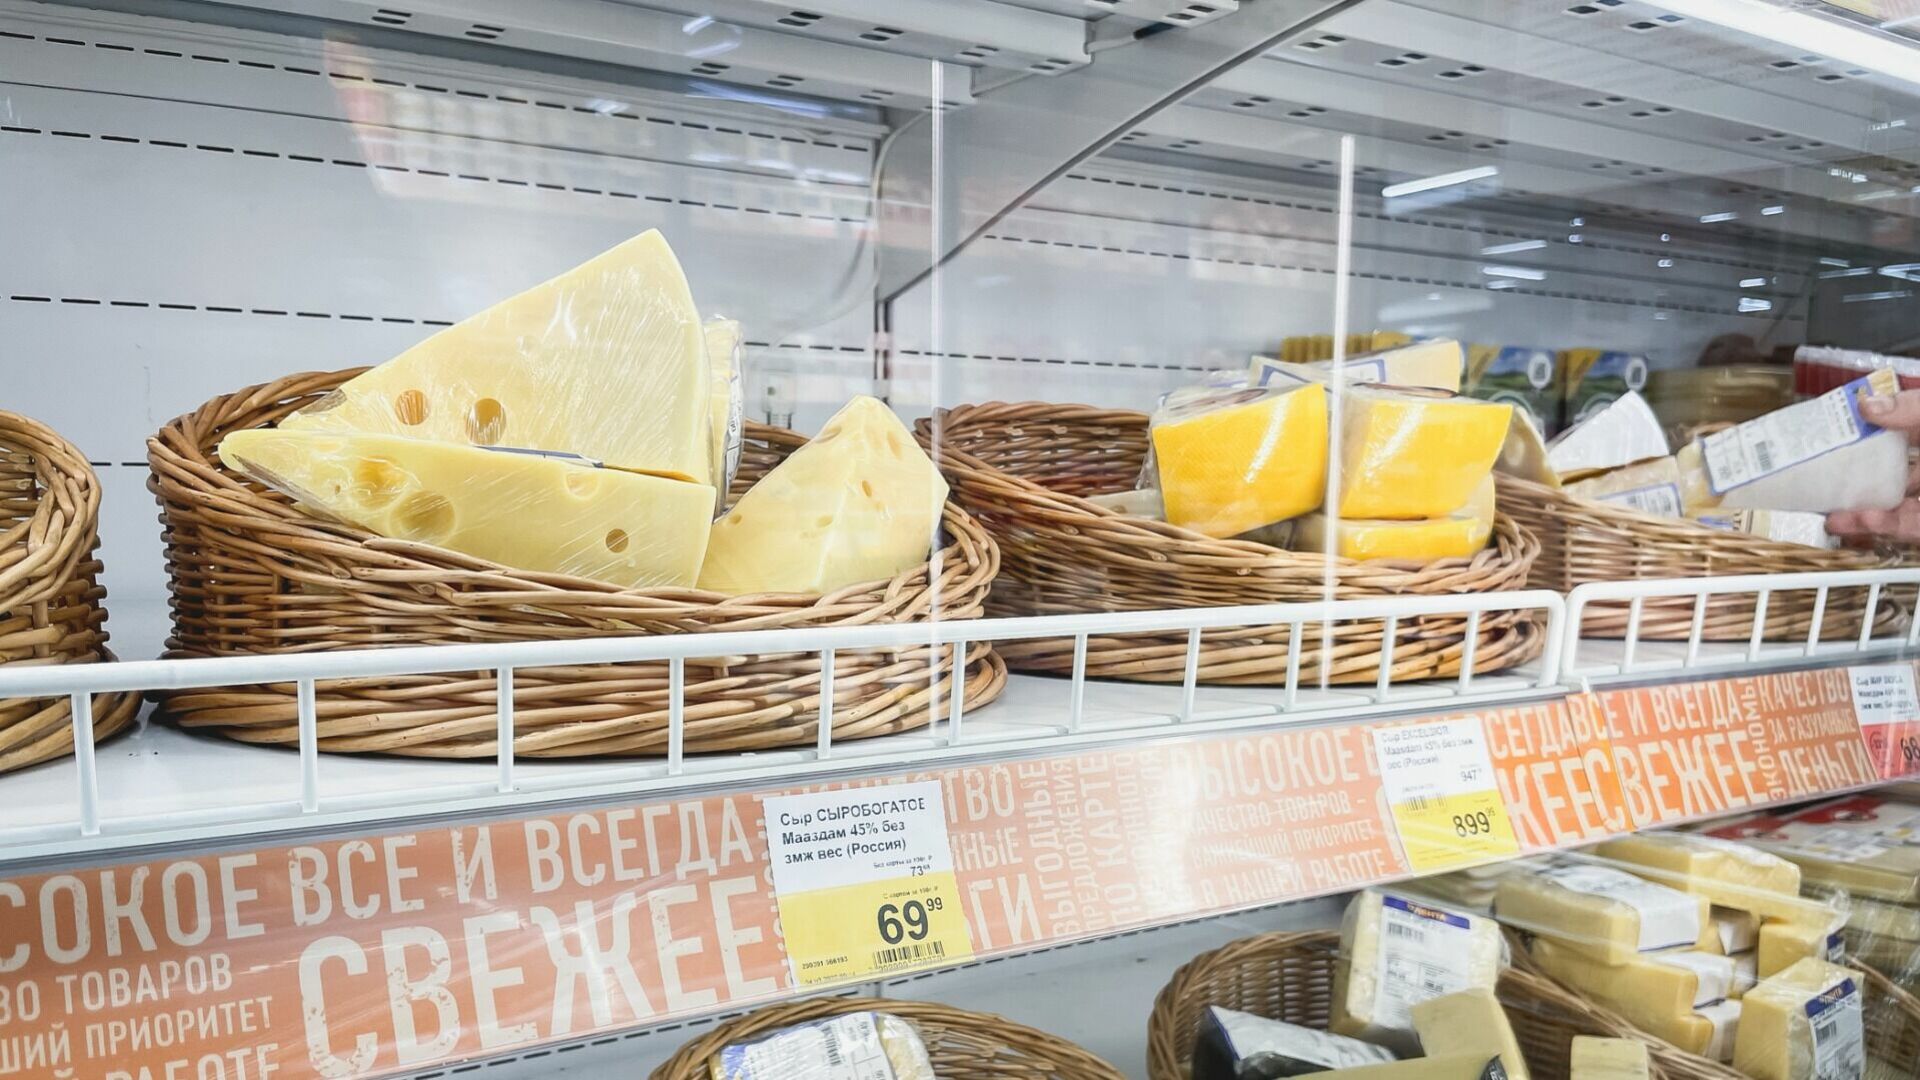 Тысячу рублей взыскал волгоградец с «Ашана» за неверный ценник на сыр